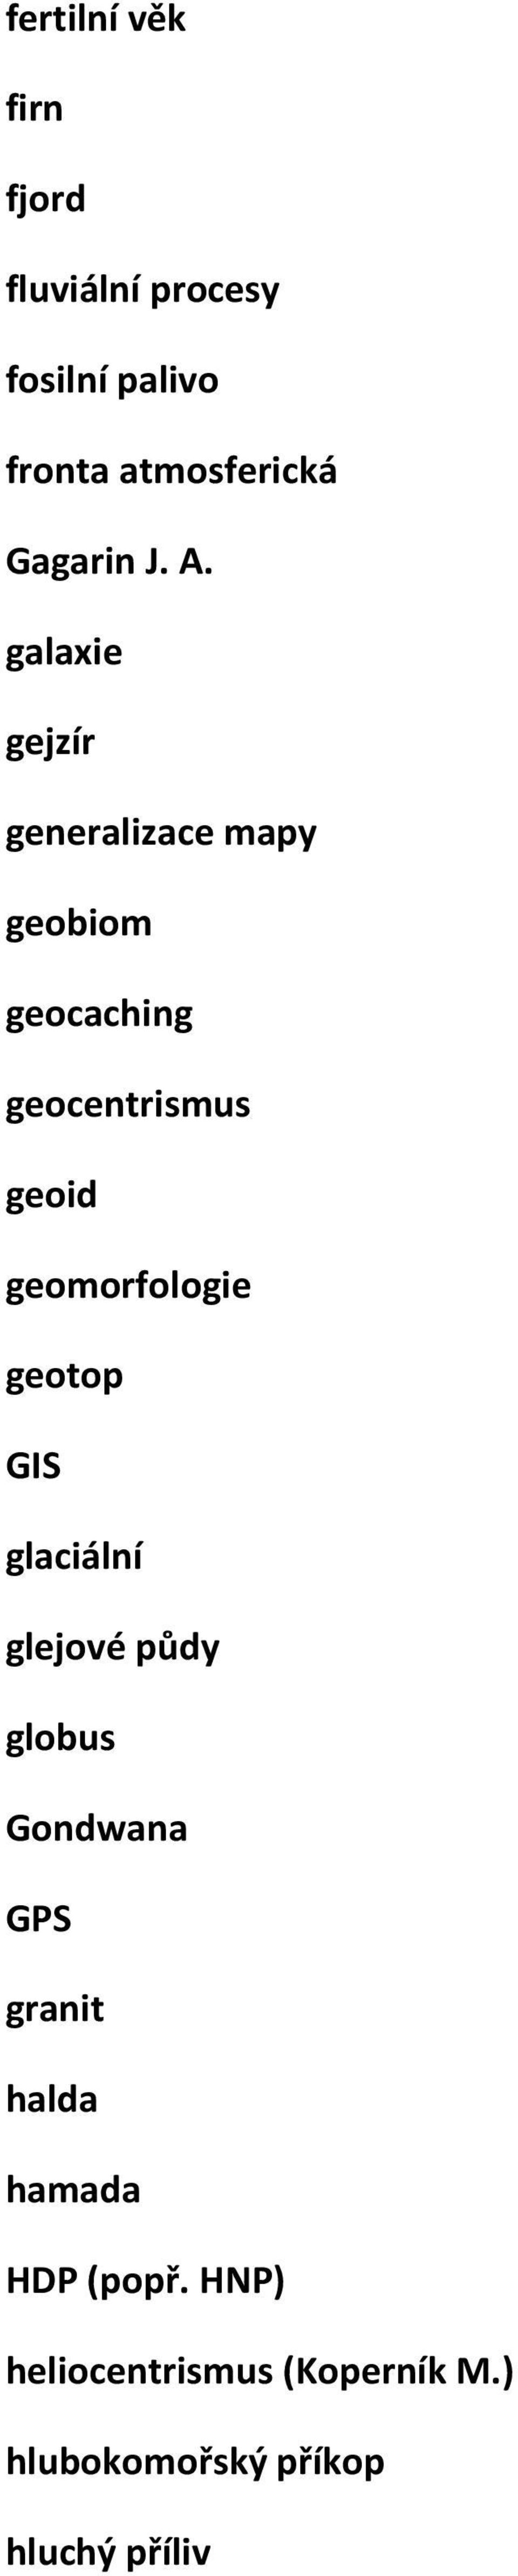 galaxie gejzír generalizace mapy geobiom geocaching geocentrismus geoid